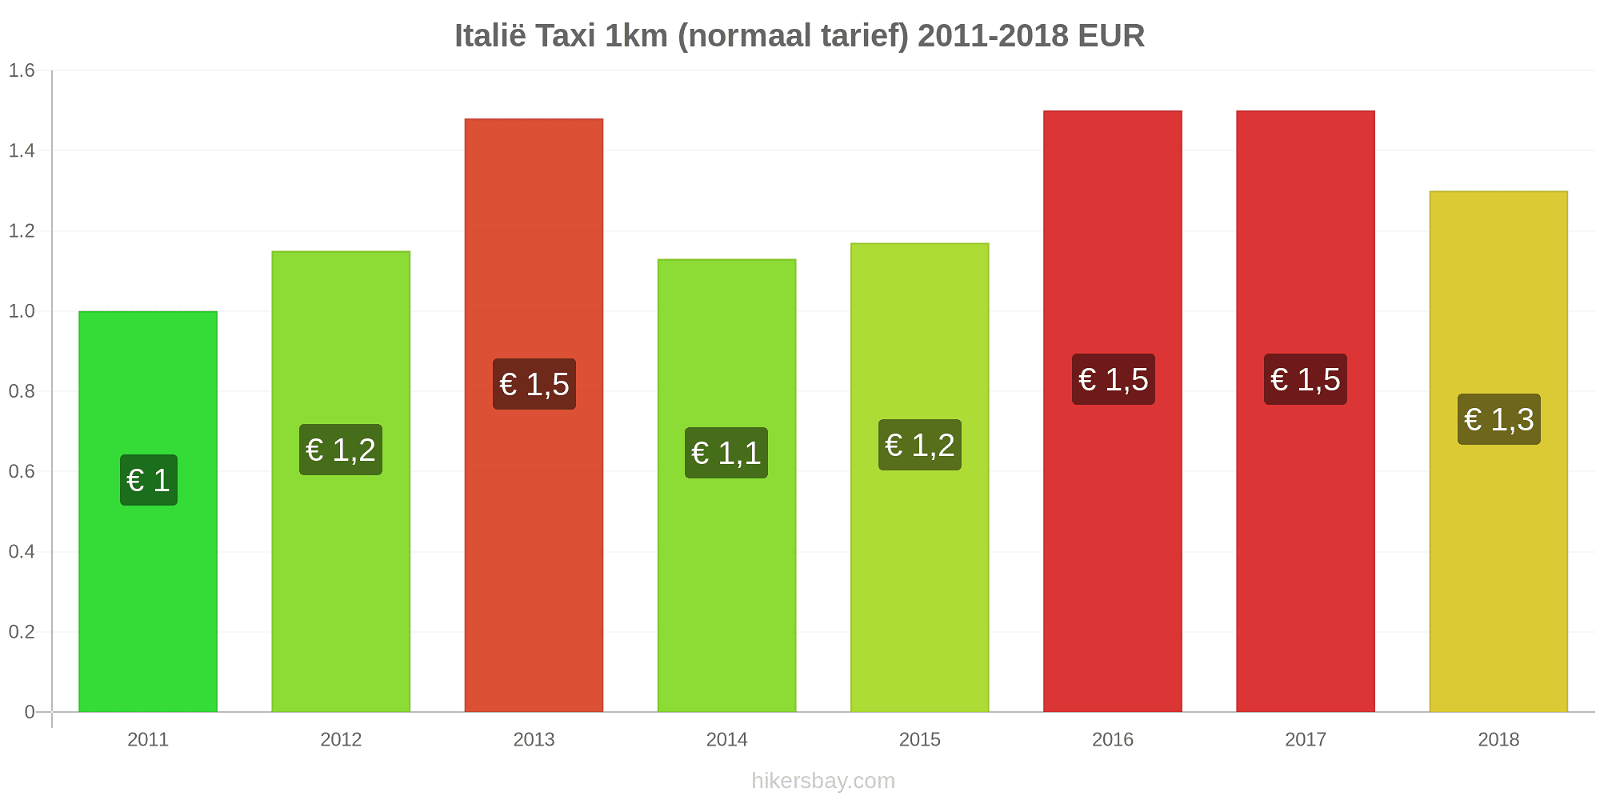 Italië prijswijzigingen Taxi 1km (normaal tarief) hikersbay.com